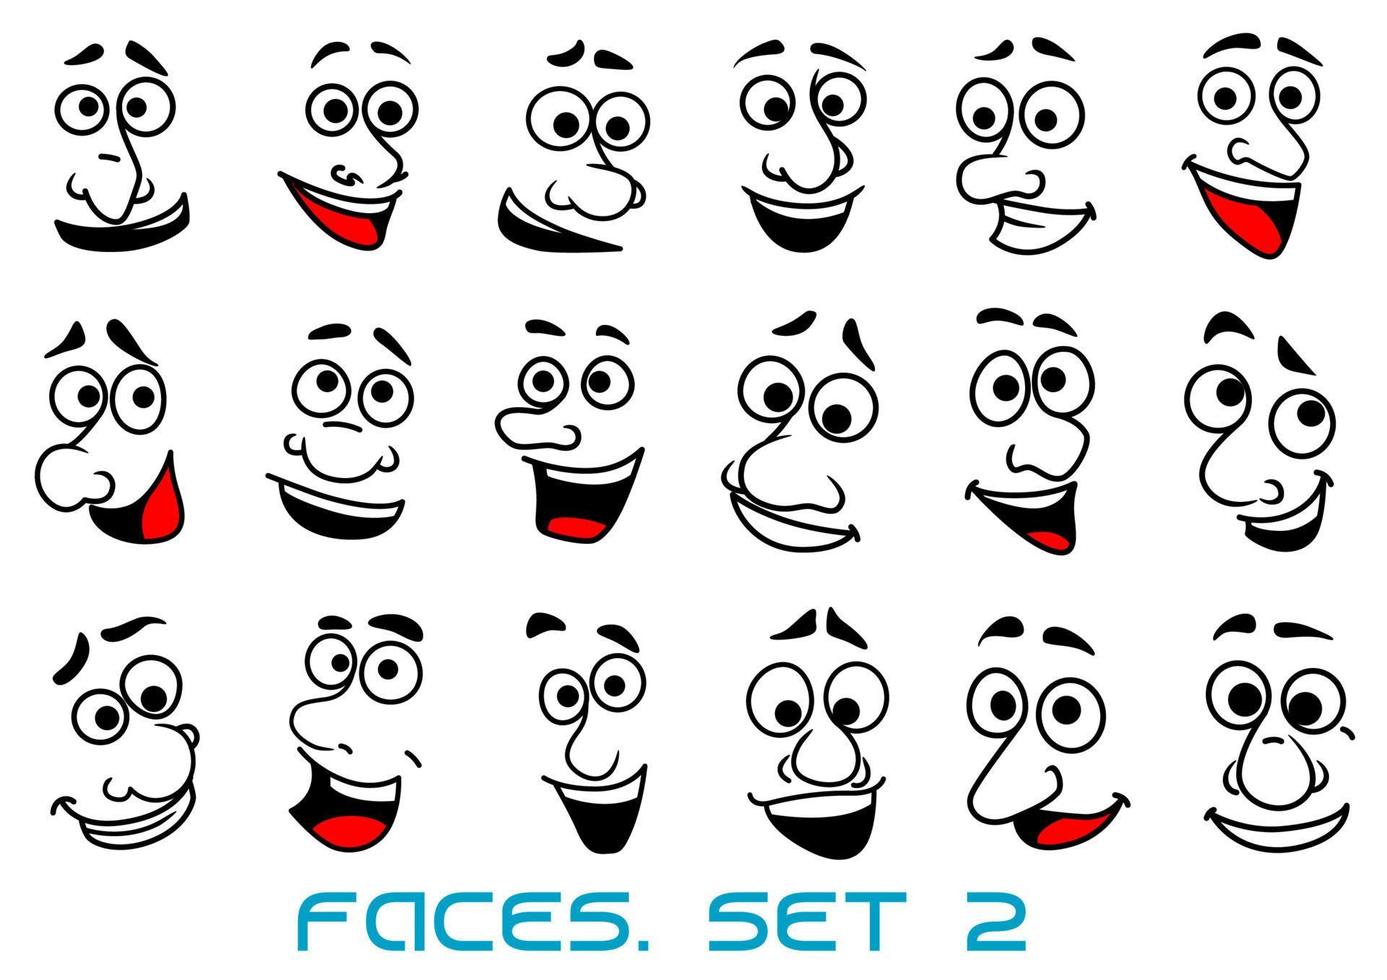 rostos humanos de desenhos animados com emoções felizes vetor